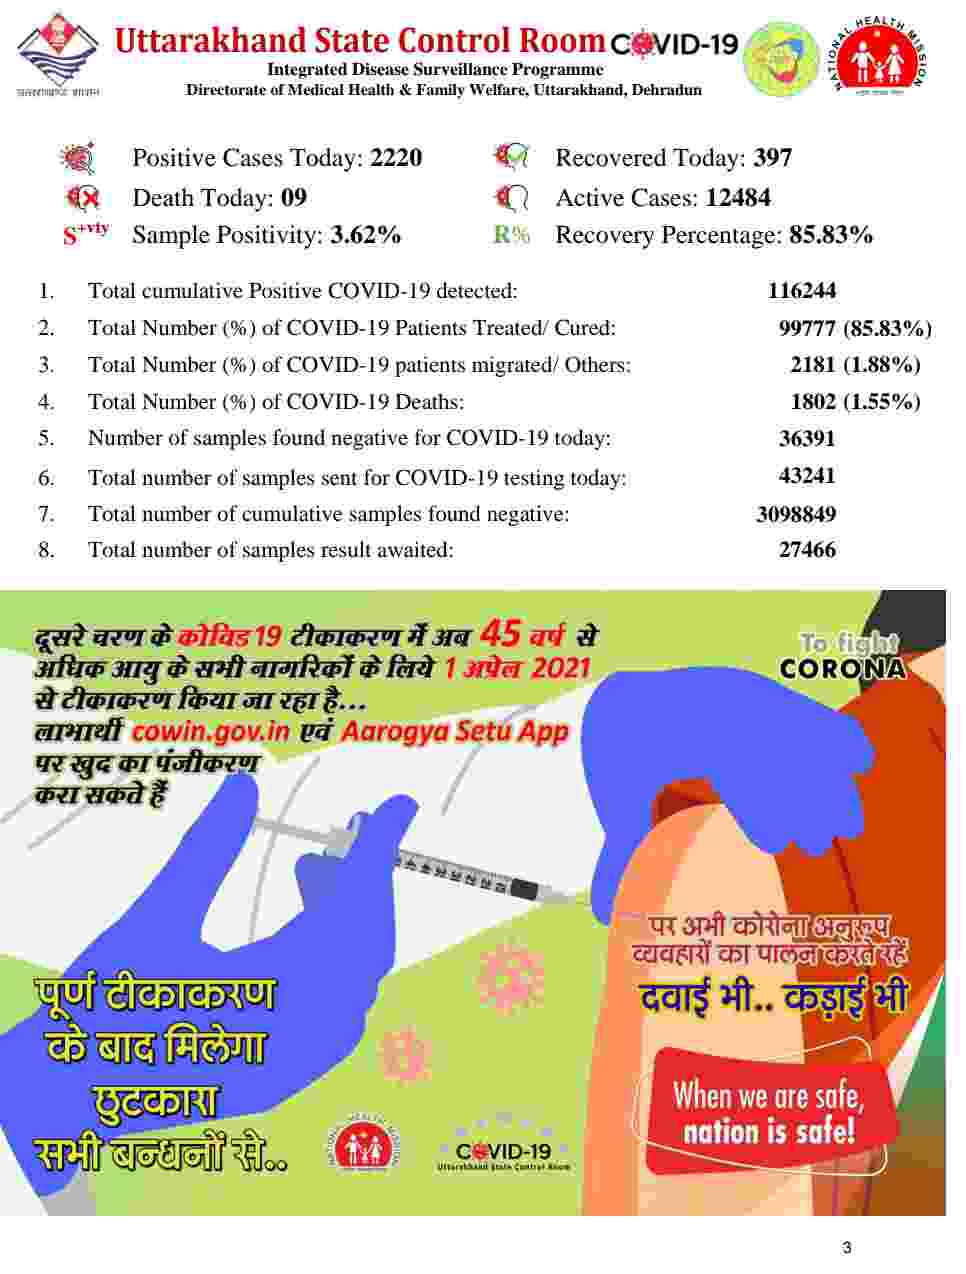 उत्तराखंड में आज फिर रिकॉर्ड कोरोना मरीज़: 2220 कोविड-19 मरीज़, 9 लोगों की मौत, देहरादून में 914 कोरोना संक्रमित 4 Hello Uttarakhand News »